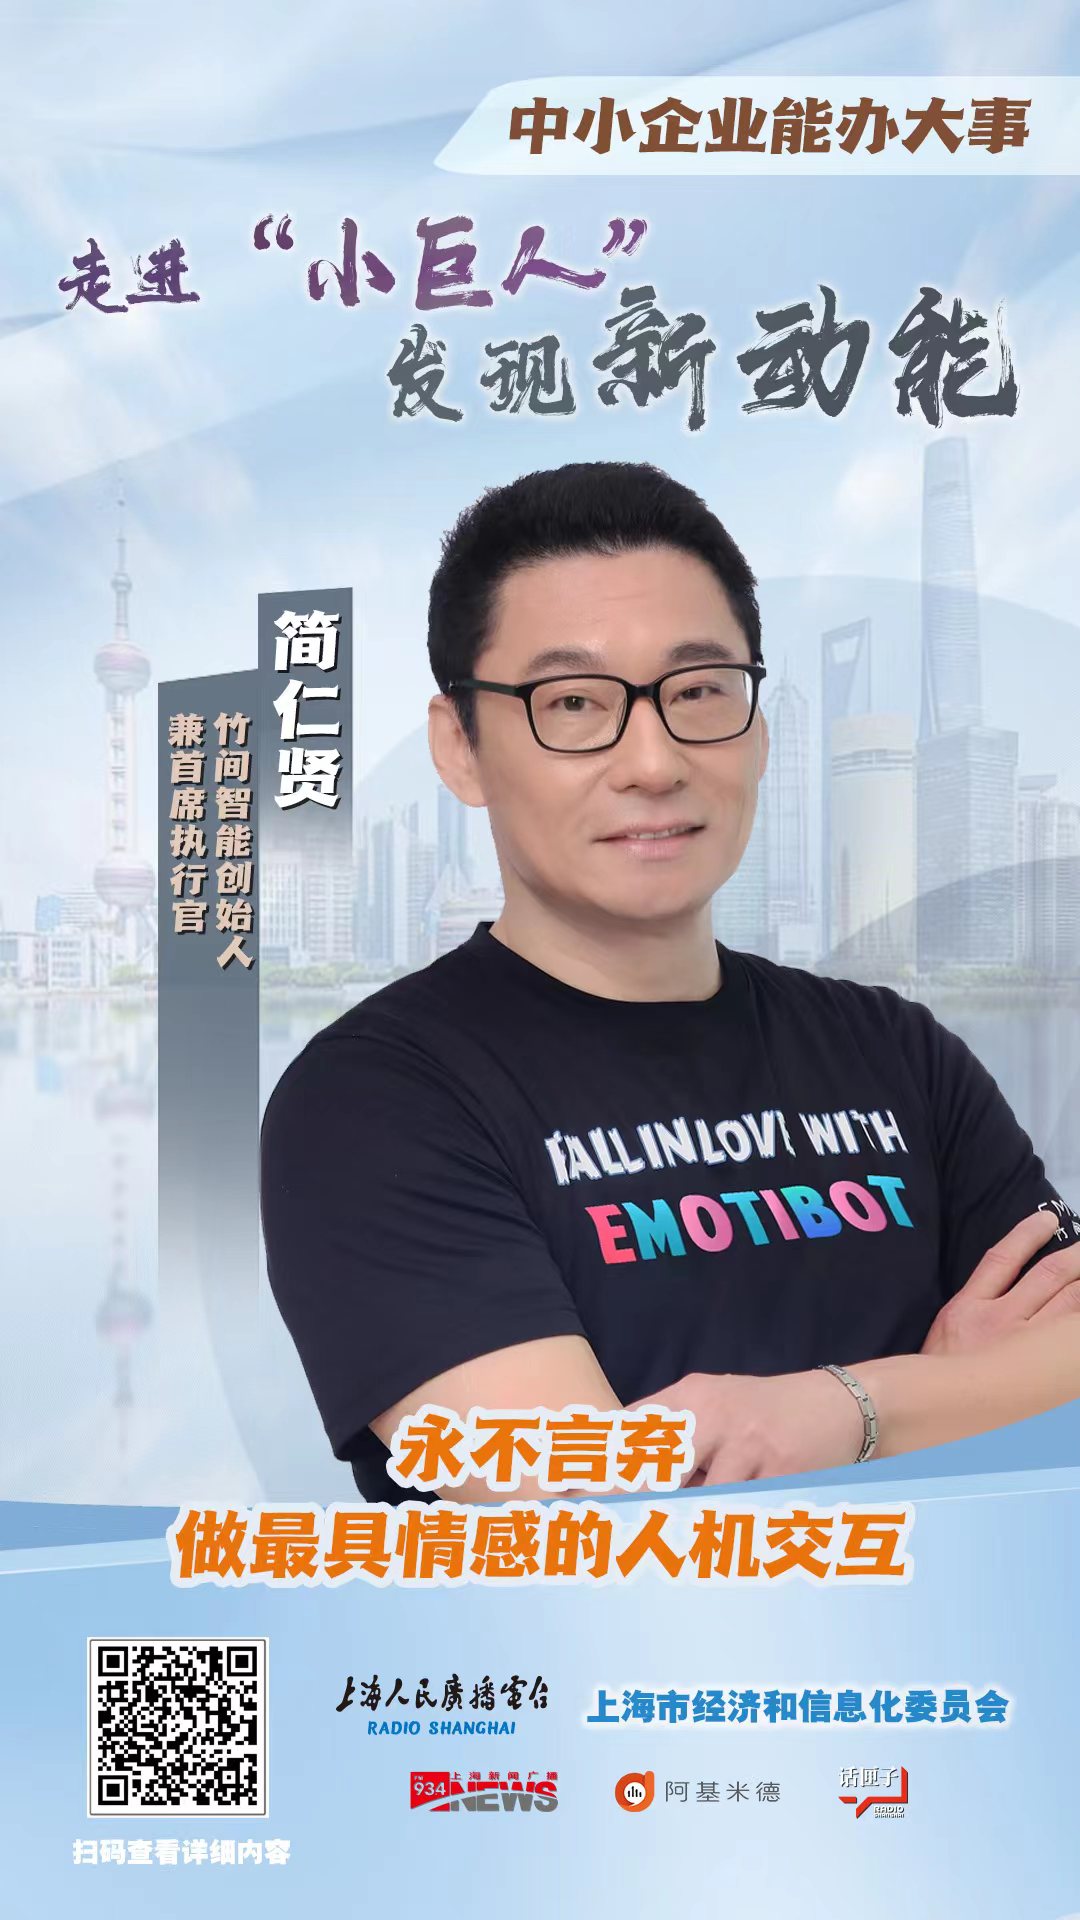 上海人民广播电台报道专精特新“小巨人”竹间智能